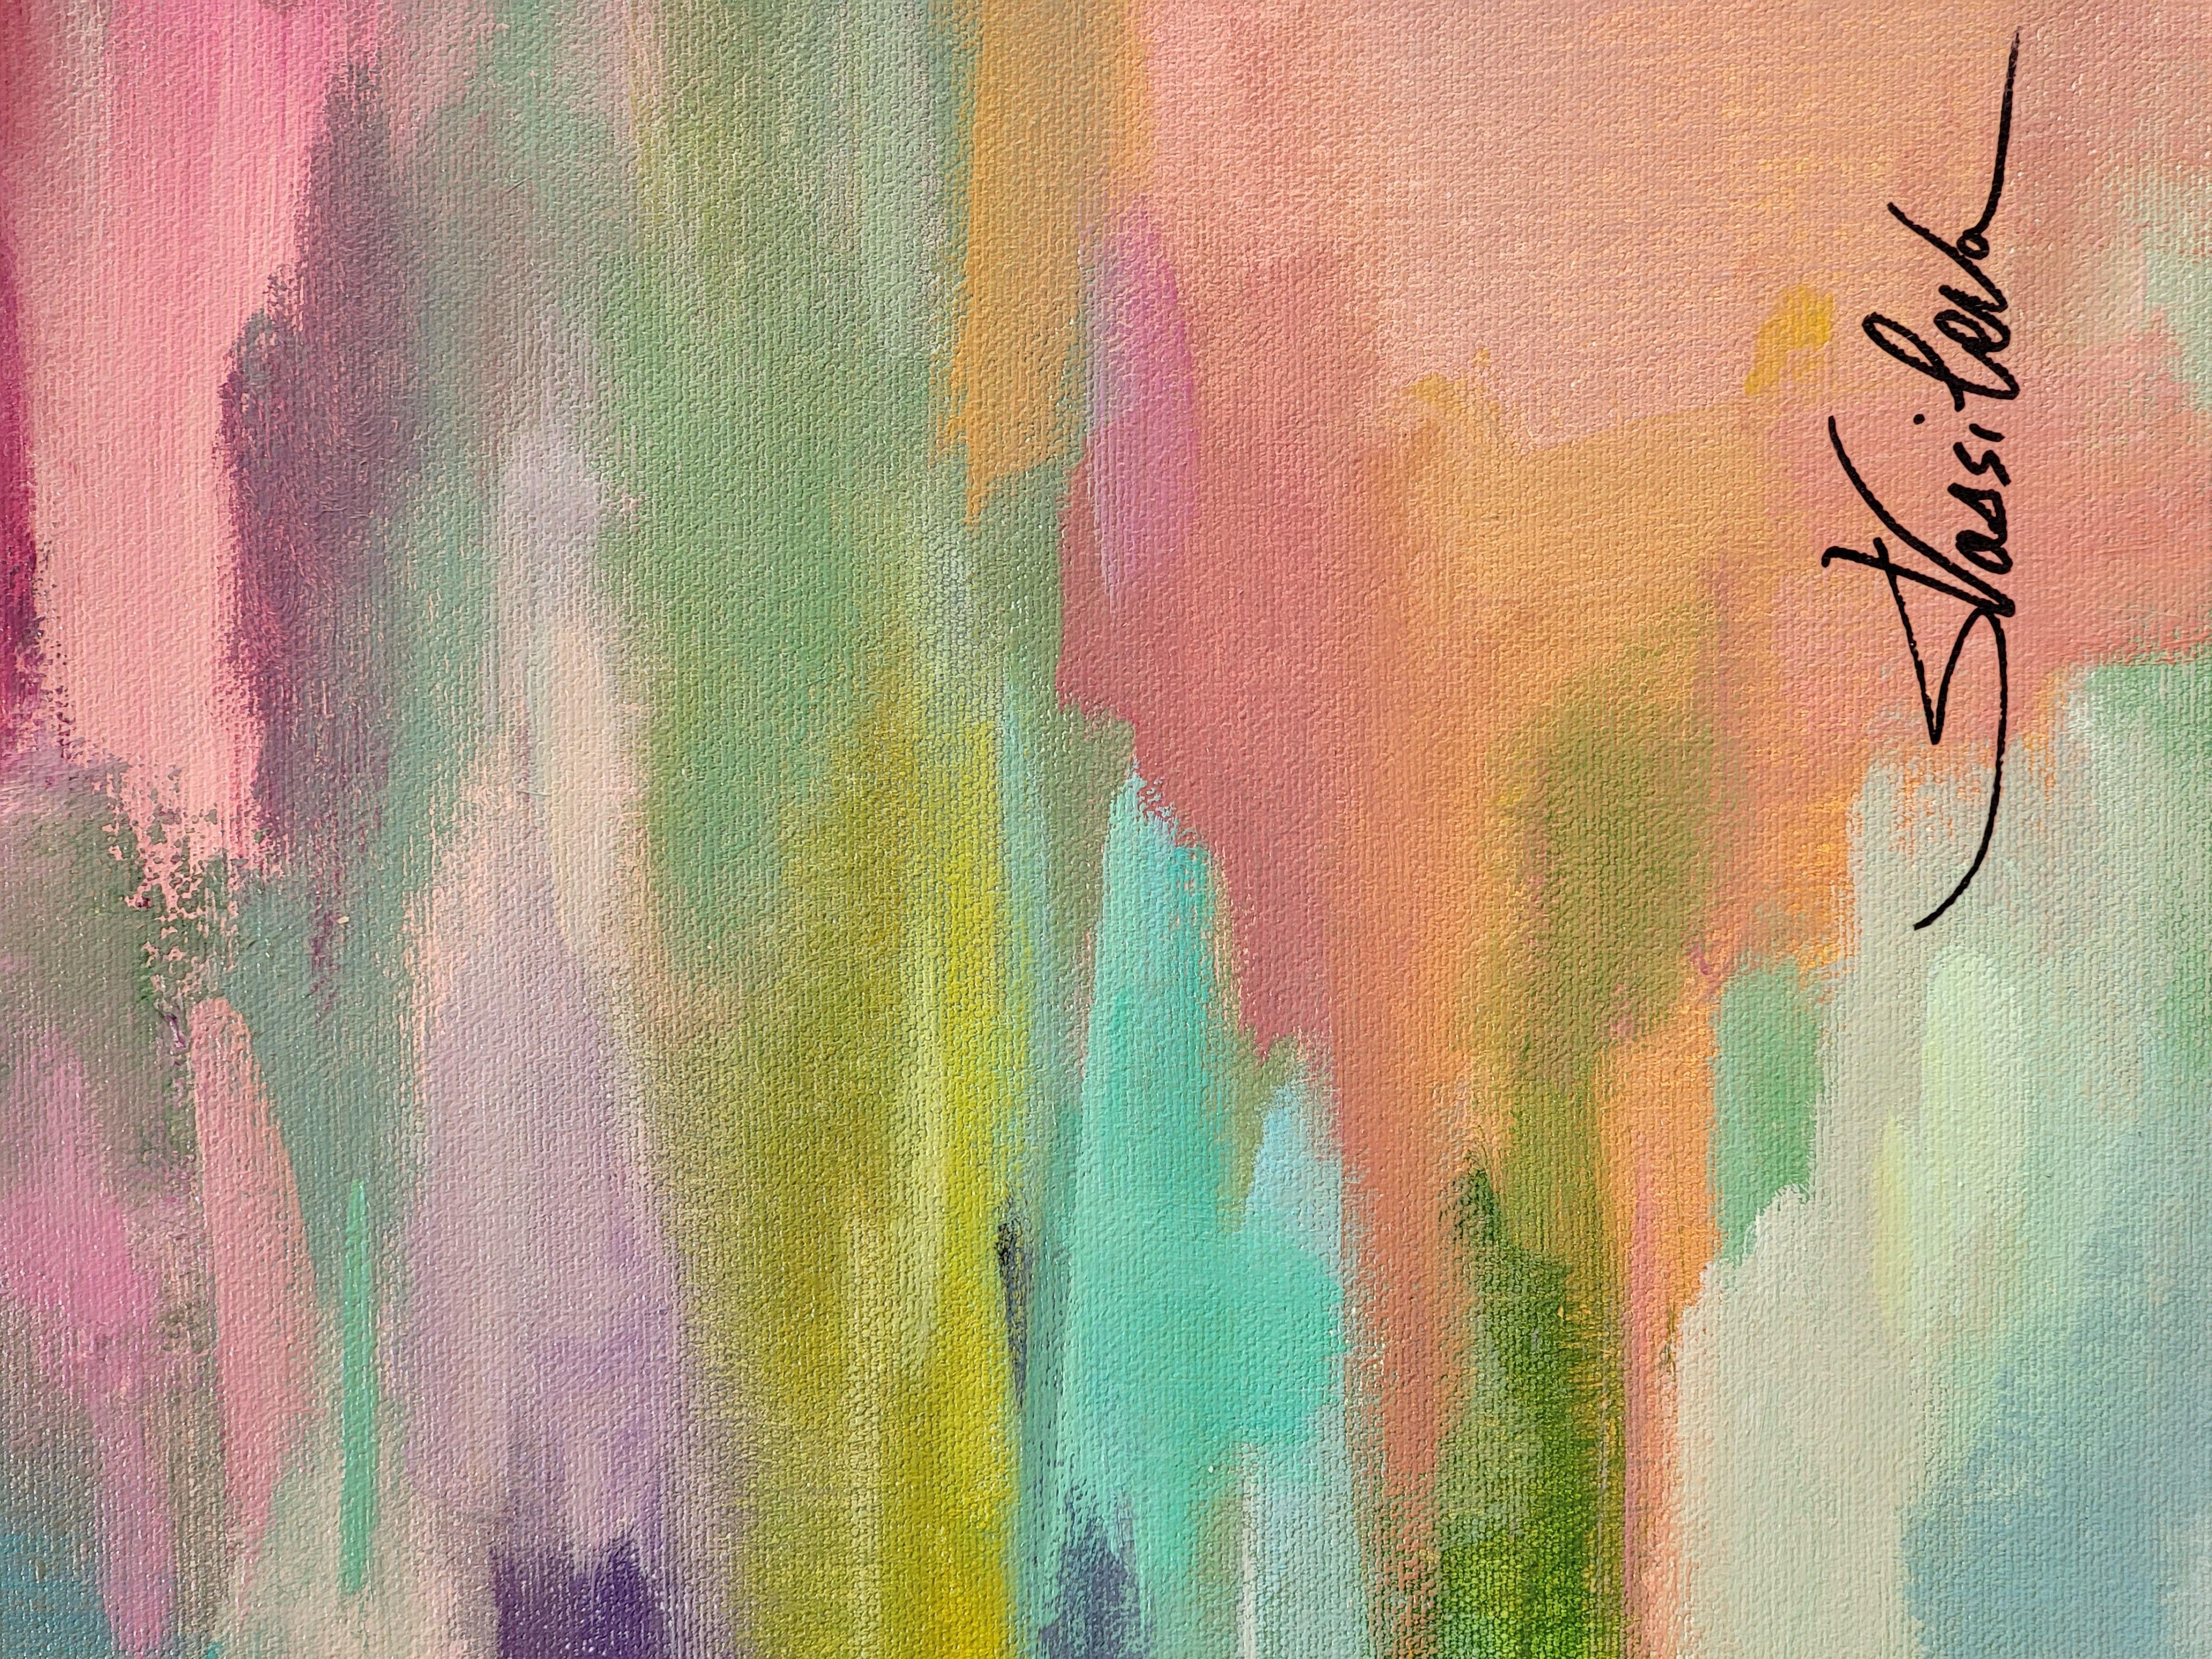 Cette peinture, créée entre la réalité et l'abstraction, capture l'ambiance d'une belle scène d'été. Les couleurs sont chaudes et audacieuses - rose, violet, jaune et des touches de vert et de bleu frais expriment la riche palette du paysage. Une